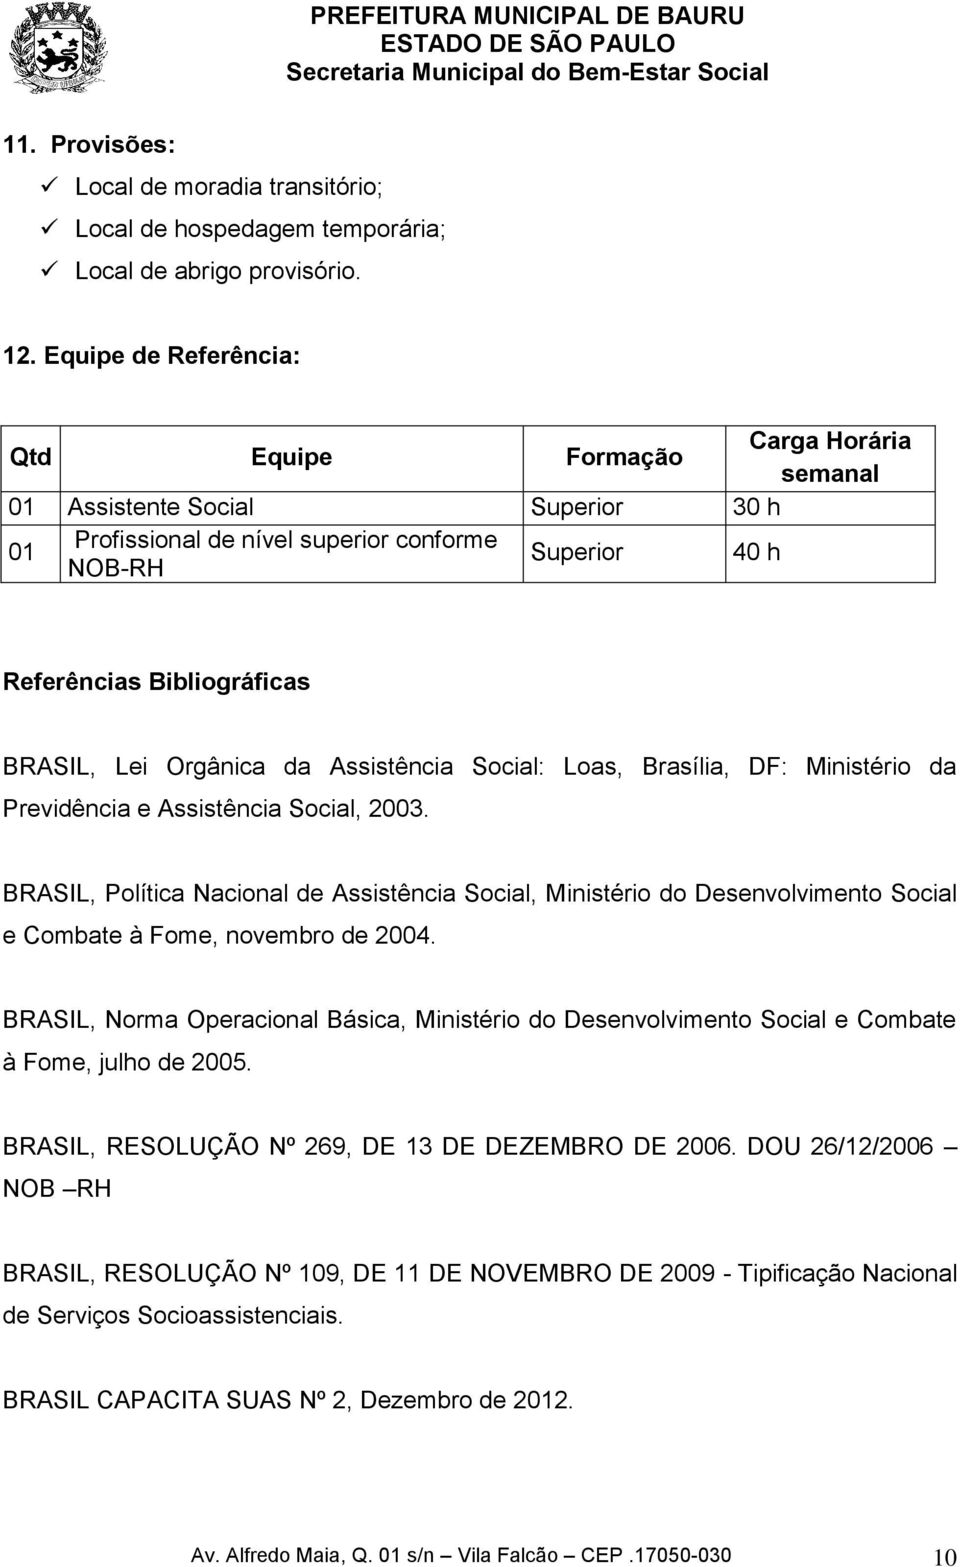 Lei Orgânica da Assistência Social: Loas, Brasília, DF: Ministério da Previdência e Assistência Social, 2003.